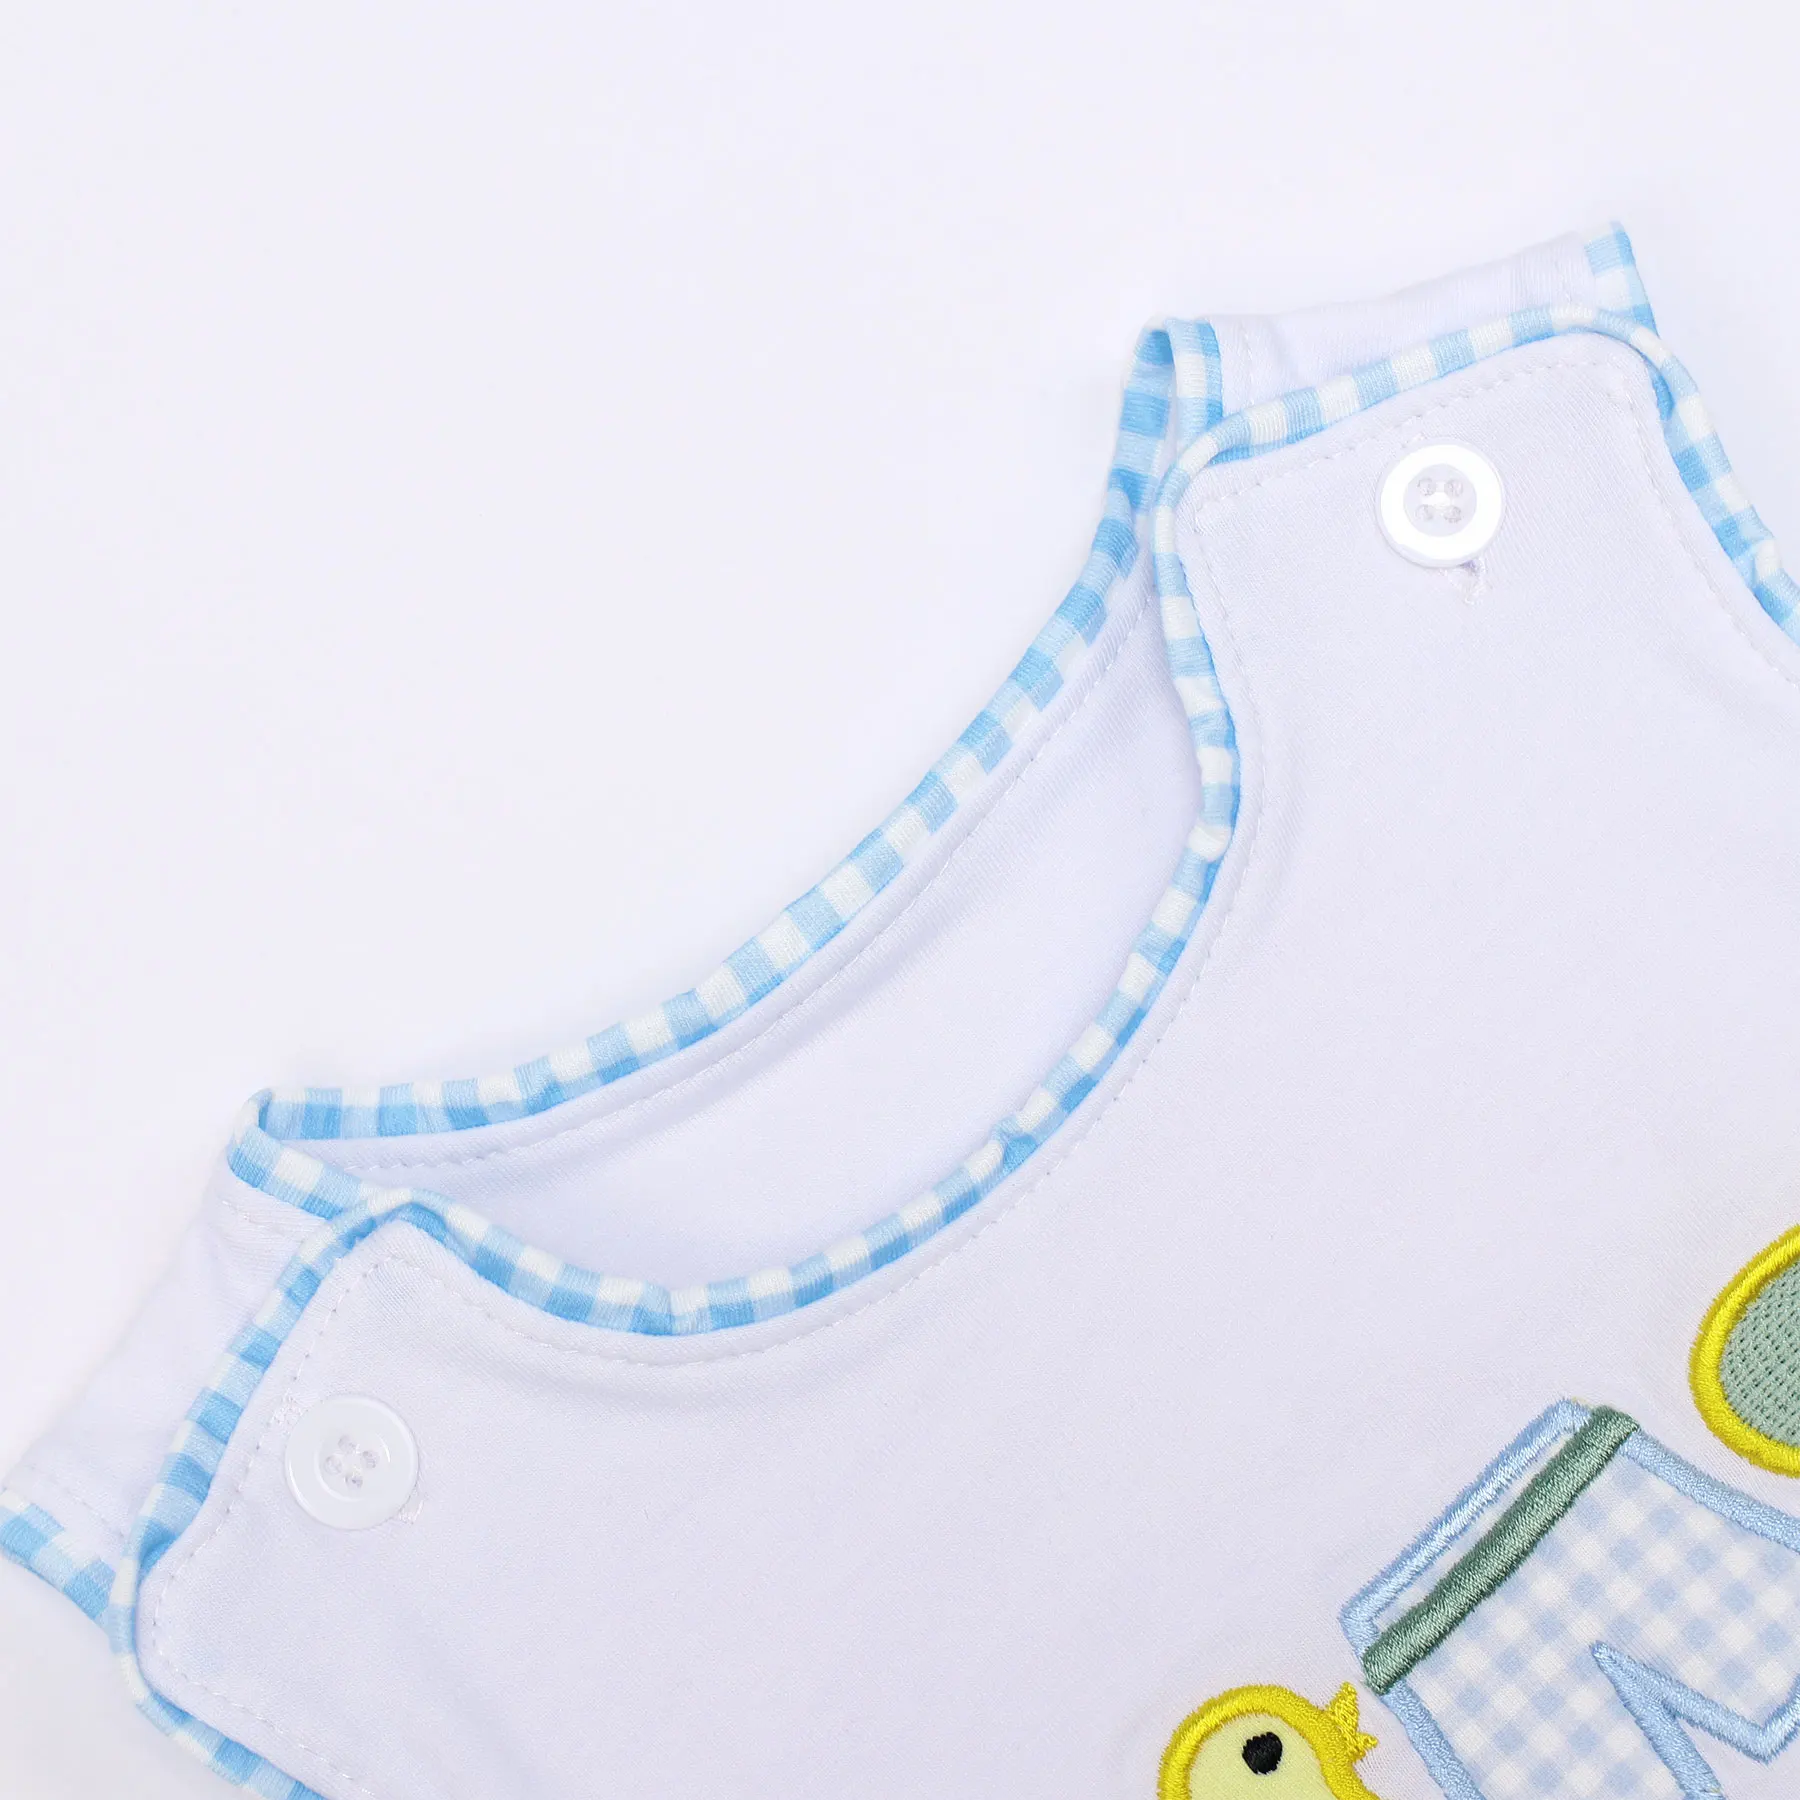 Yeni Doğan 0-3T Tulum Erkek Bebek Giysileri Ördek Nakış Kabarcık Bebek Bebes Romper Çocuklar Kısa çocuk Bodysuit Yaz Kıyafeti